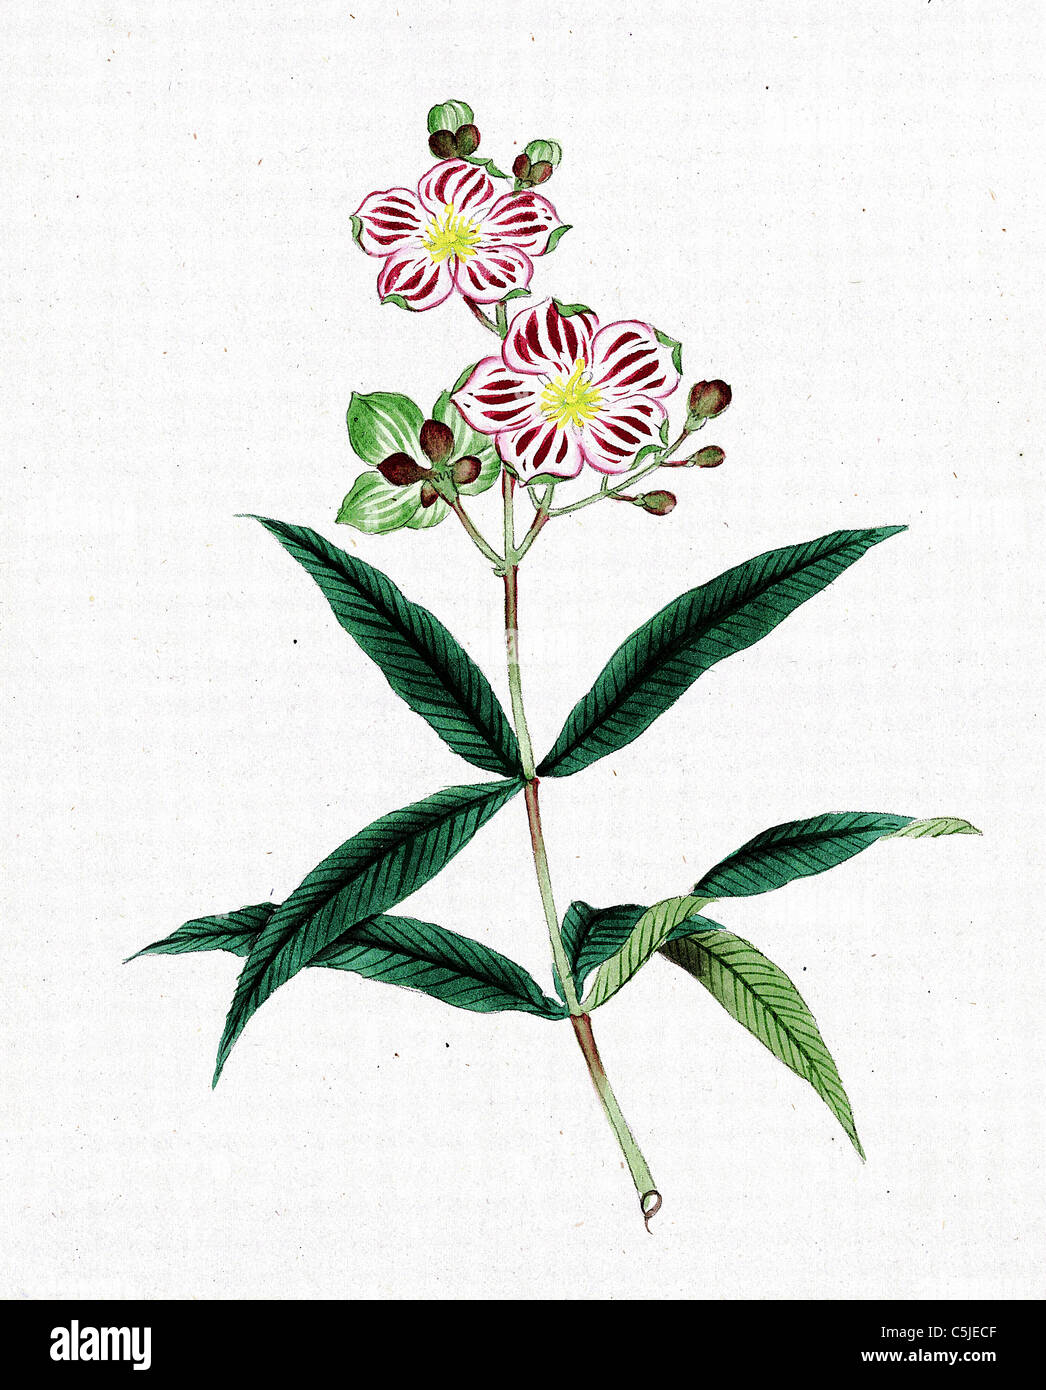 Giapponese di carta e inchiostro il disegno di un fiore dal 1870 - modificato e migliorato per una elevata qualità e risoluzione di immagine Foto Stock